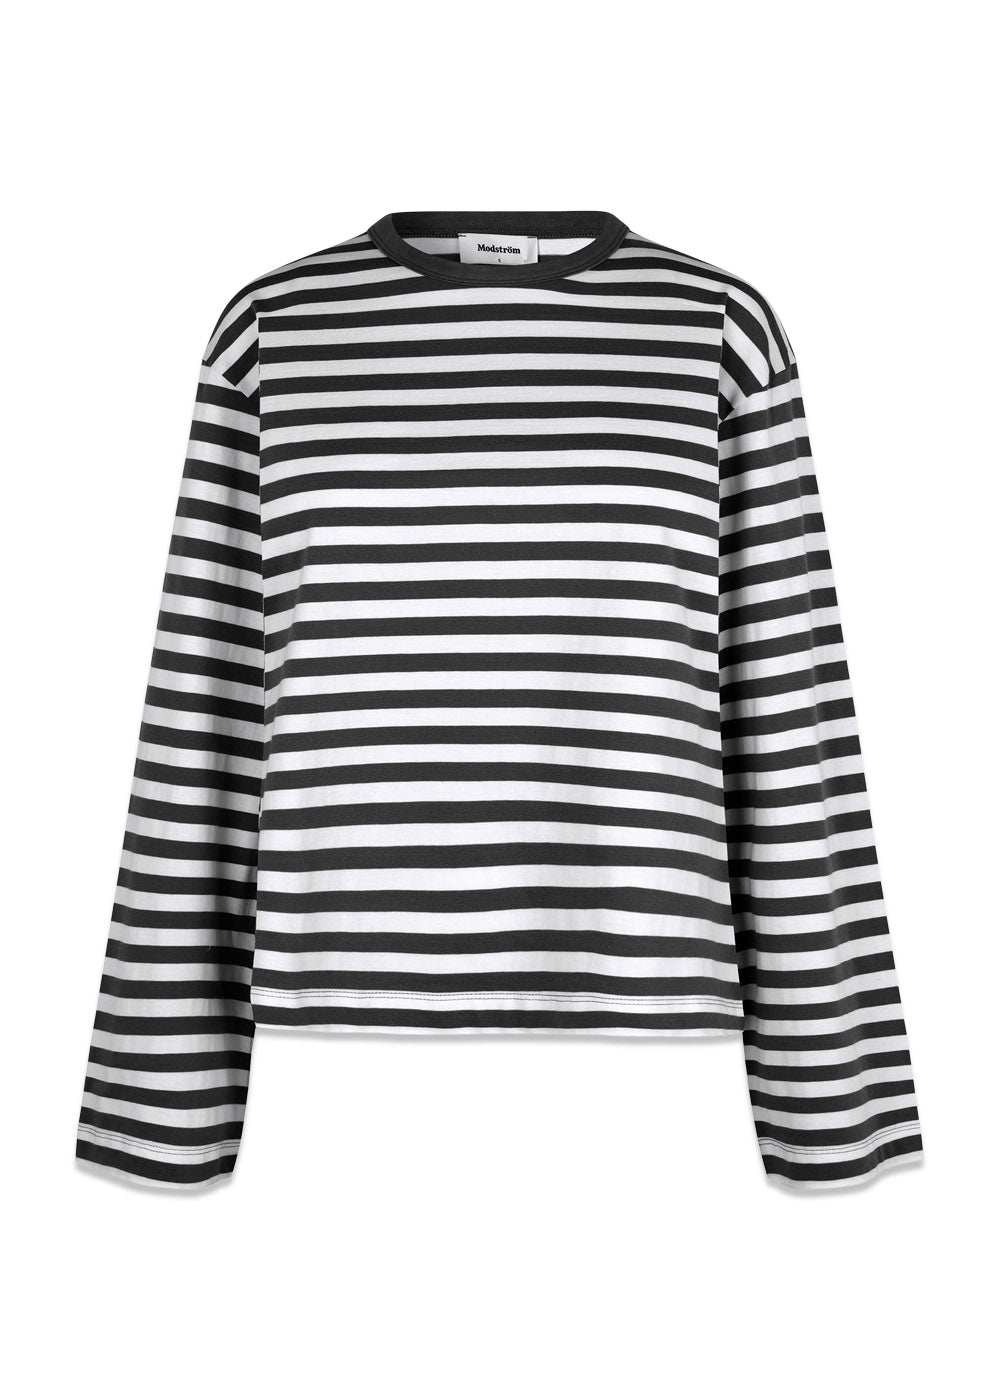 Modströms HellenMD LS stripe t-shirt - Black White Stripe. Køb t-shirts her.